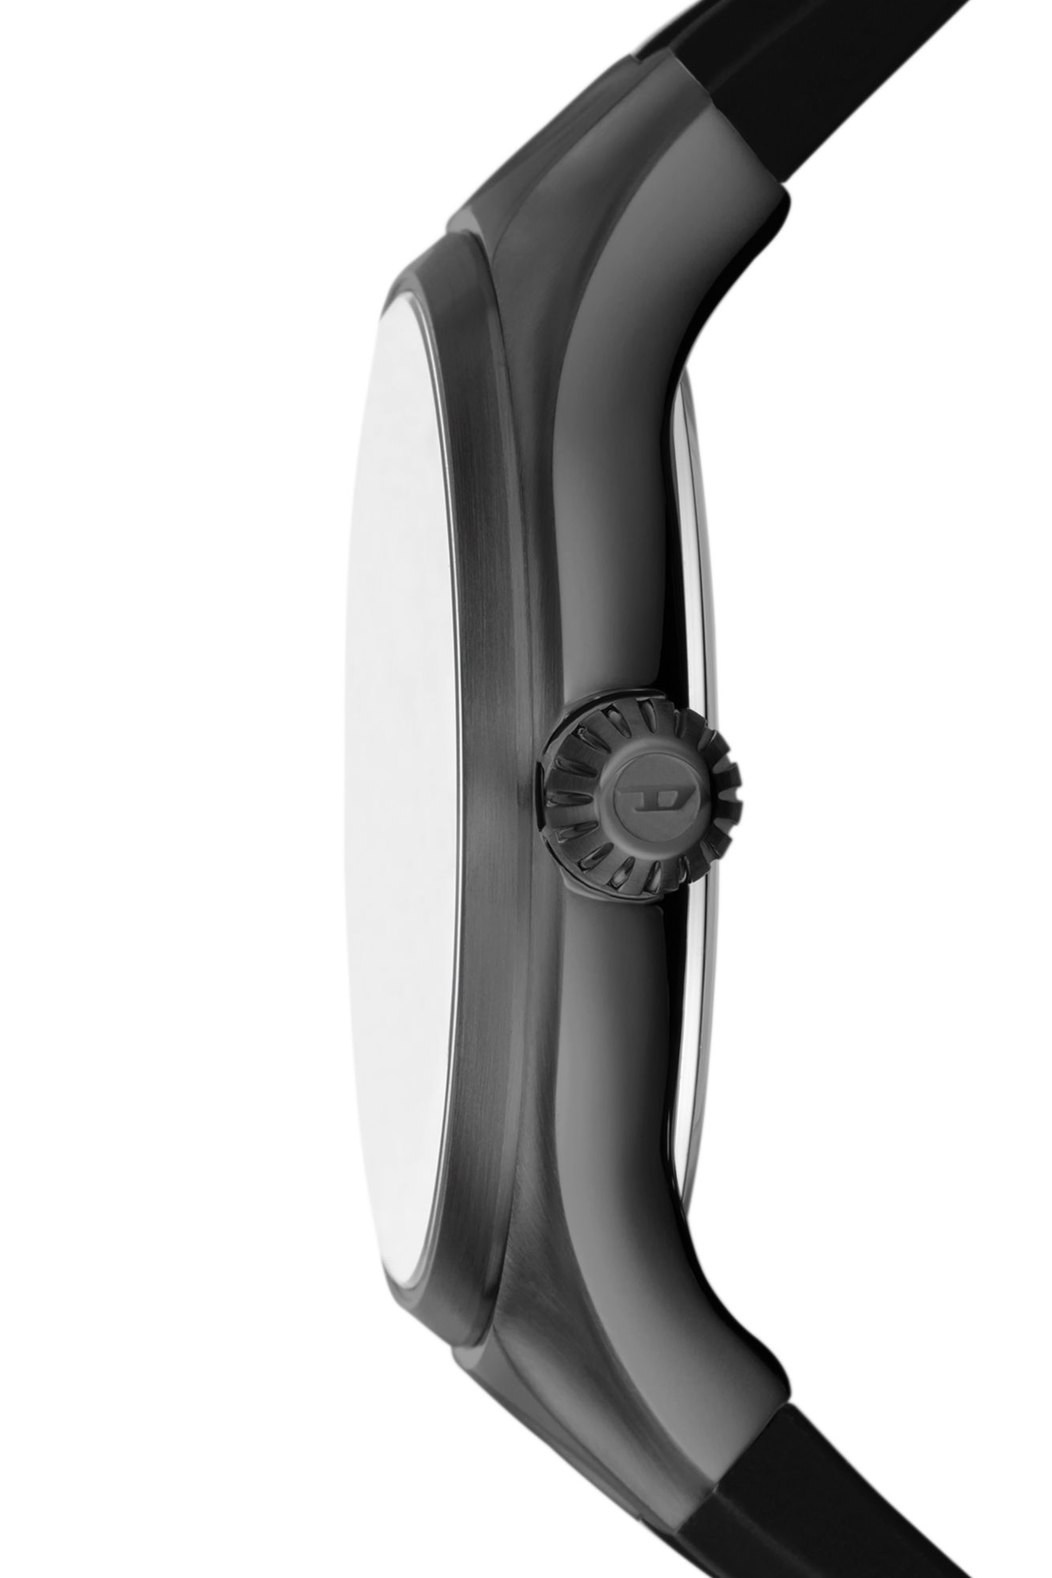 Diesel Streamline Three-Hand Black Silicone Watch